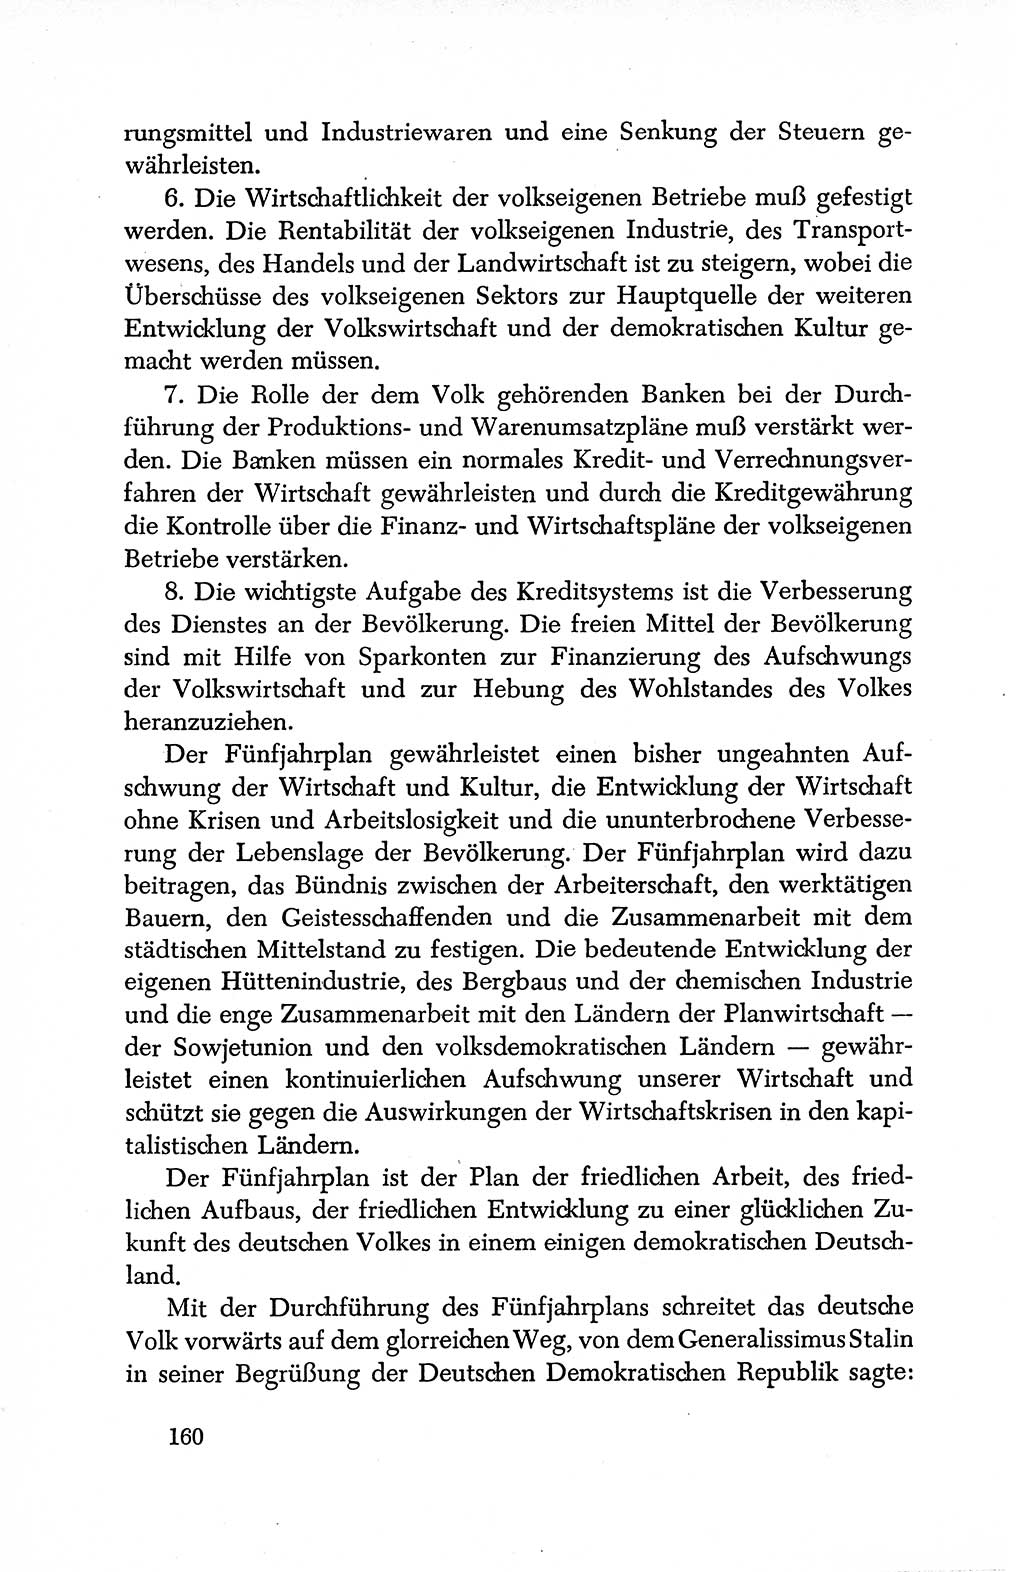 Dokumente der Sozialistischen Einheitspartei Deutschlands (SED) [Deutsche Demokratische Republik (DDR)] 1950-1952, Seite 160 (Dok. SED DDR 1950-1952, S. 160)